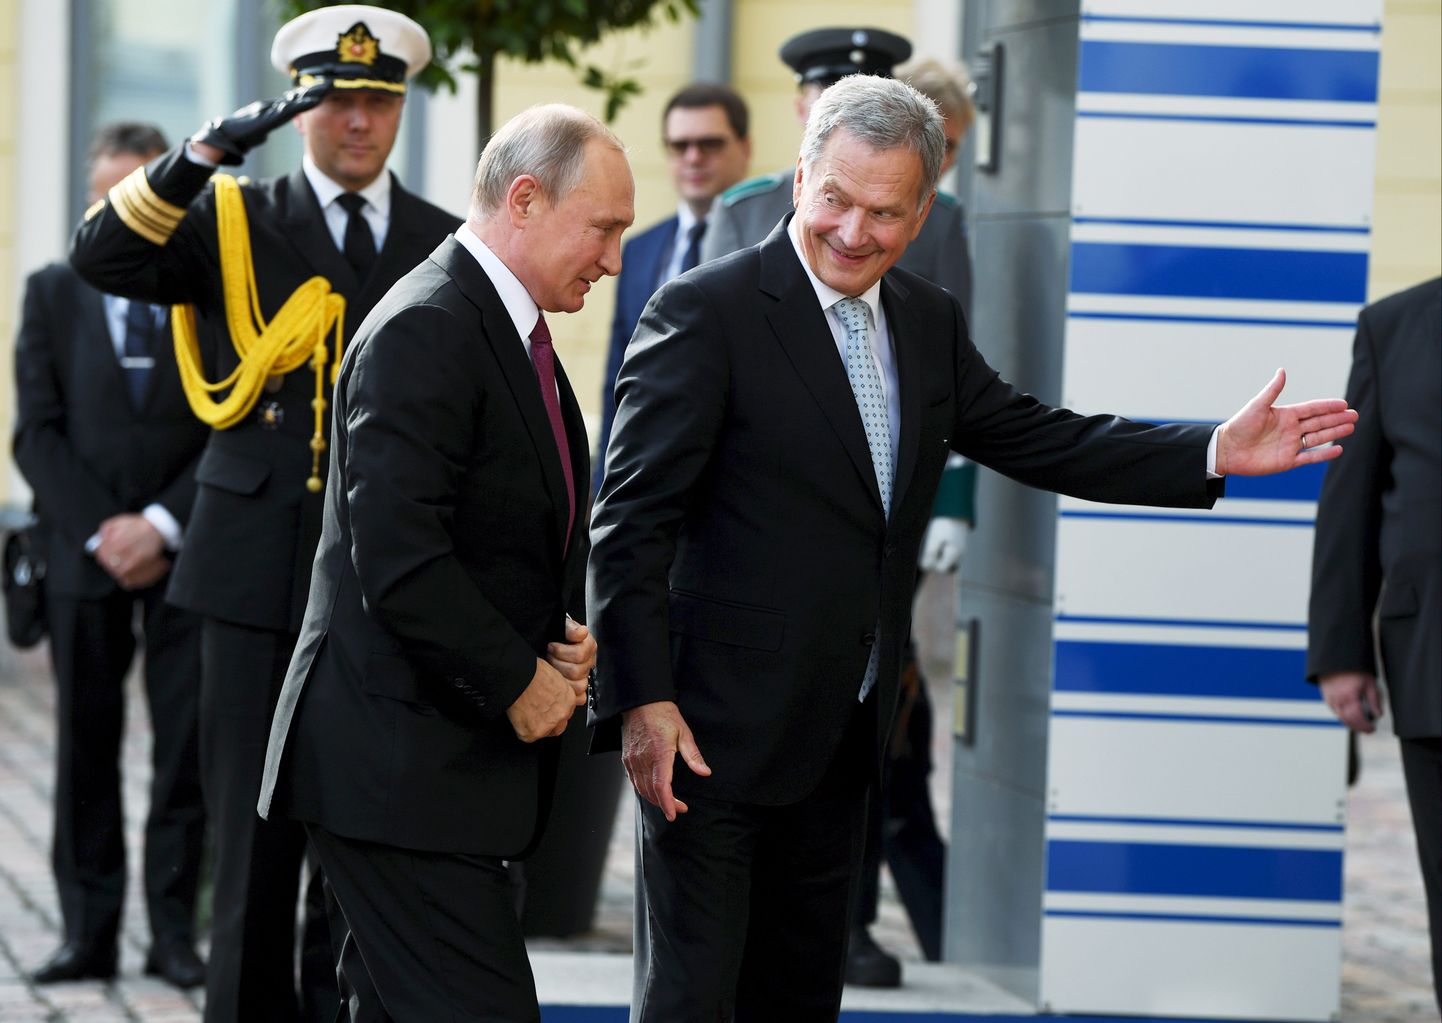 Soome president Sauli Niinistö (paremal) tervitab Soome presidendilossi Venemaa presidenti Vladimir Putinit 21. augustil.